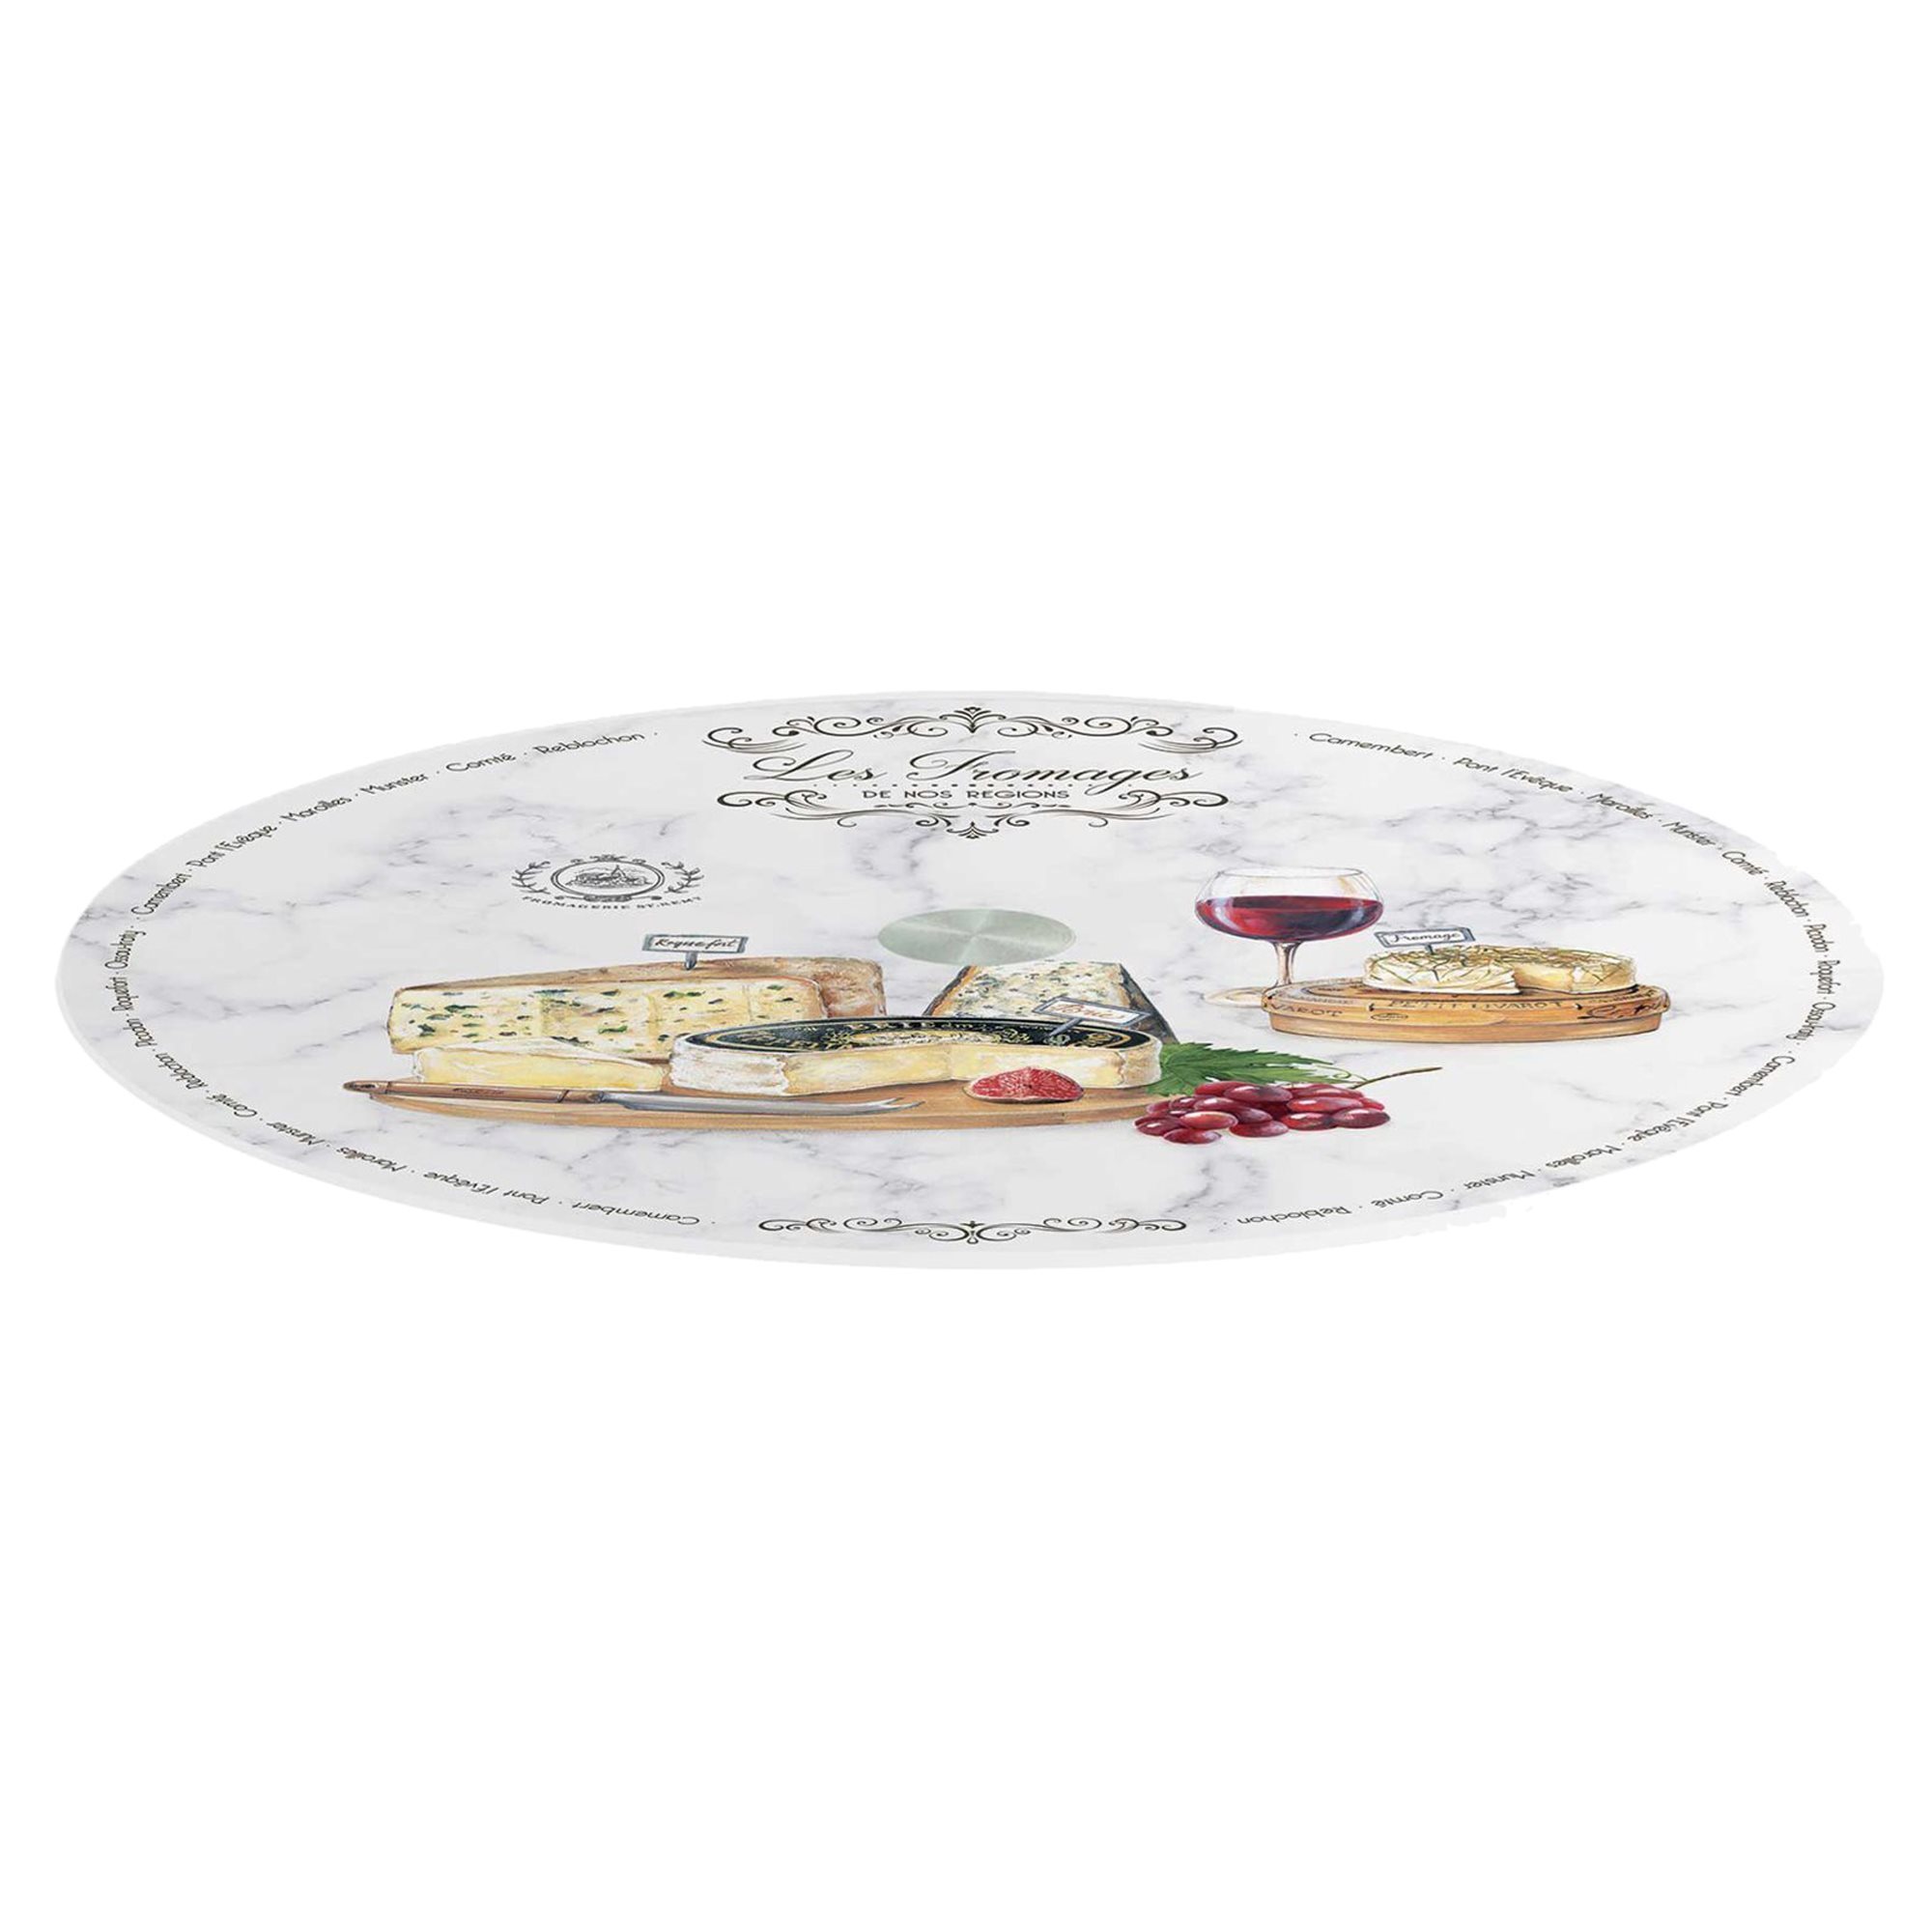 Piatto rotante Les Fromages in vetro, 32 cm - Nuova R2S